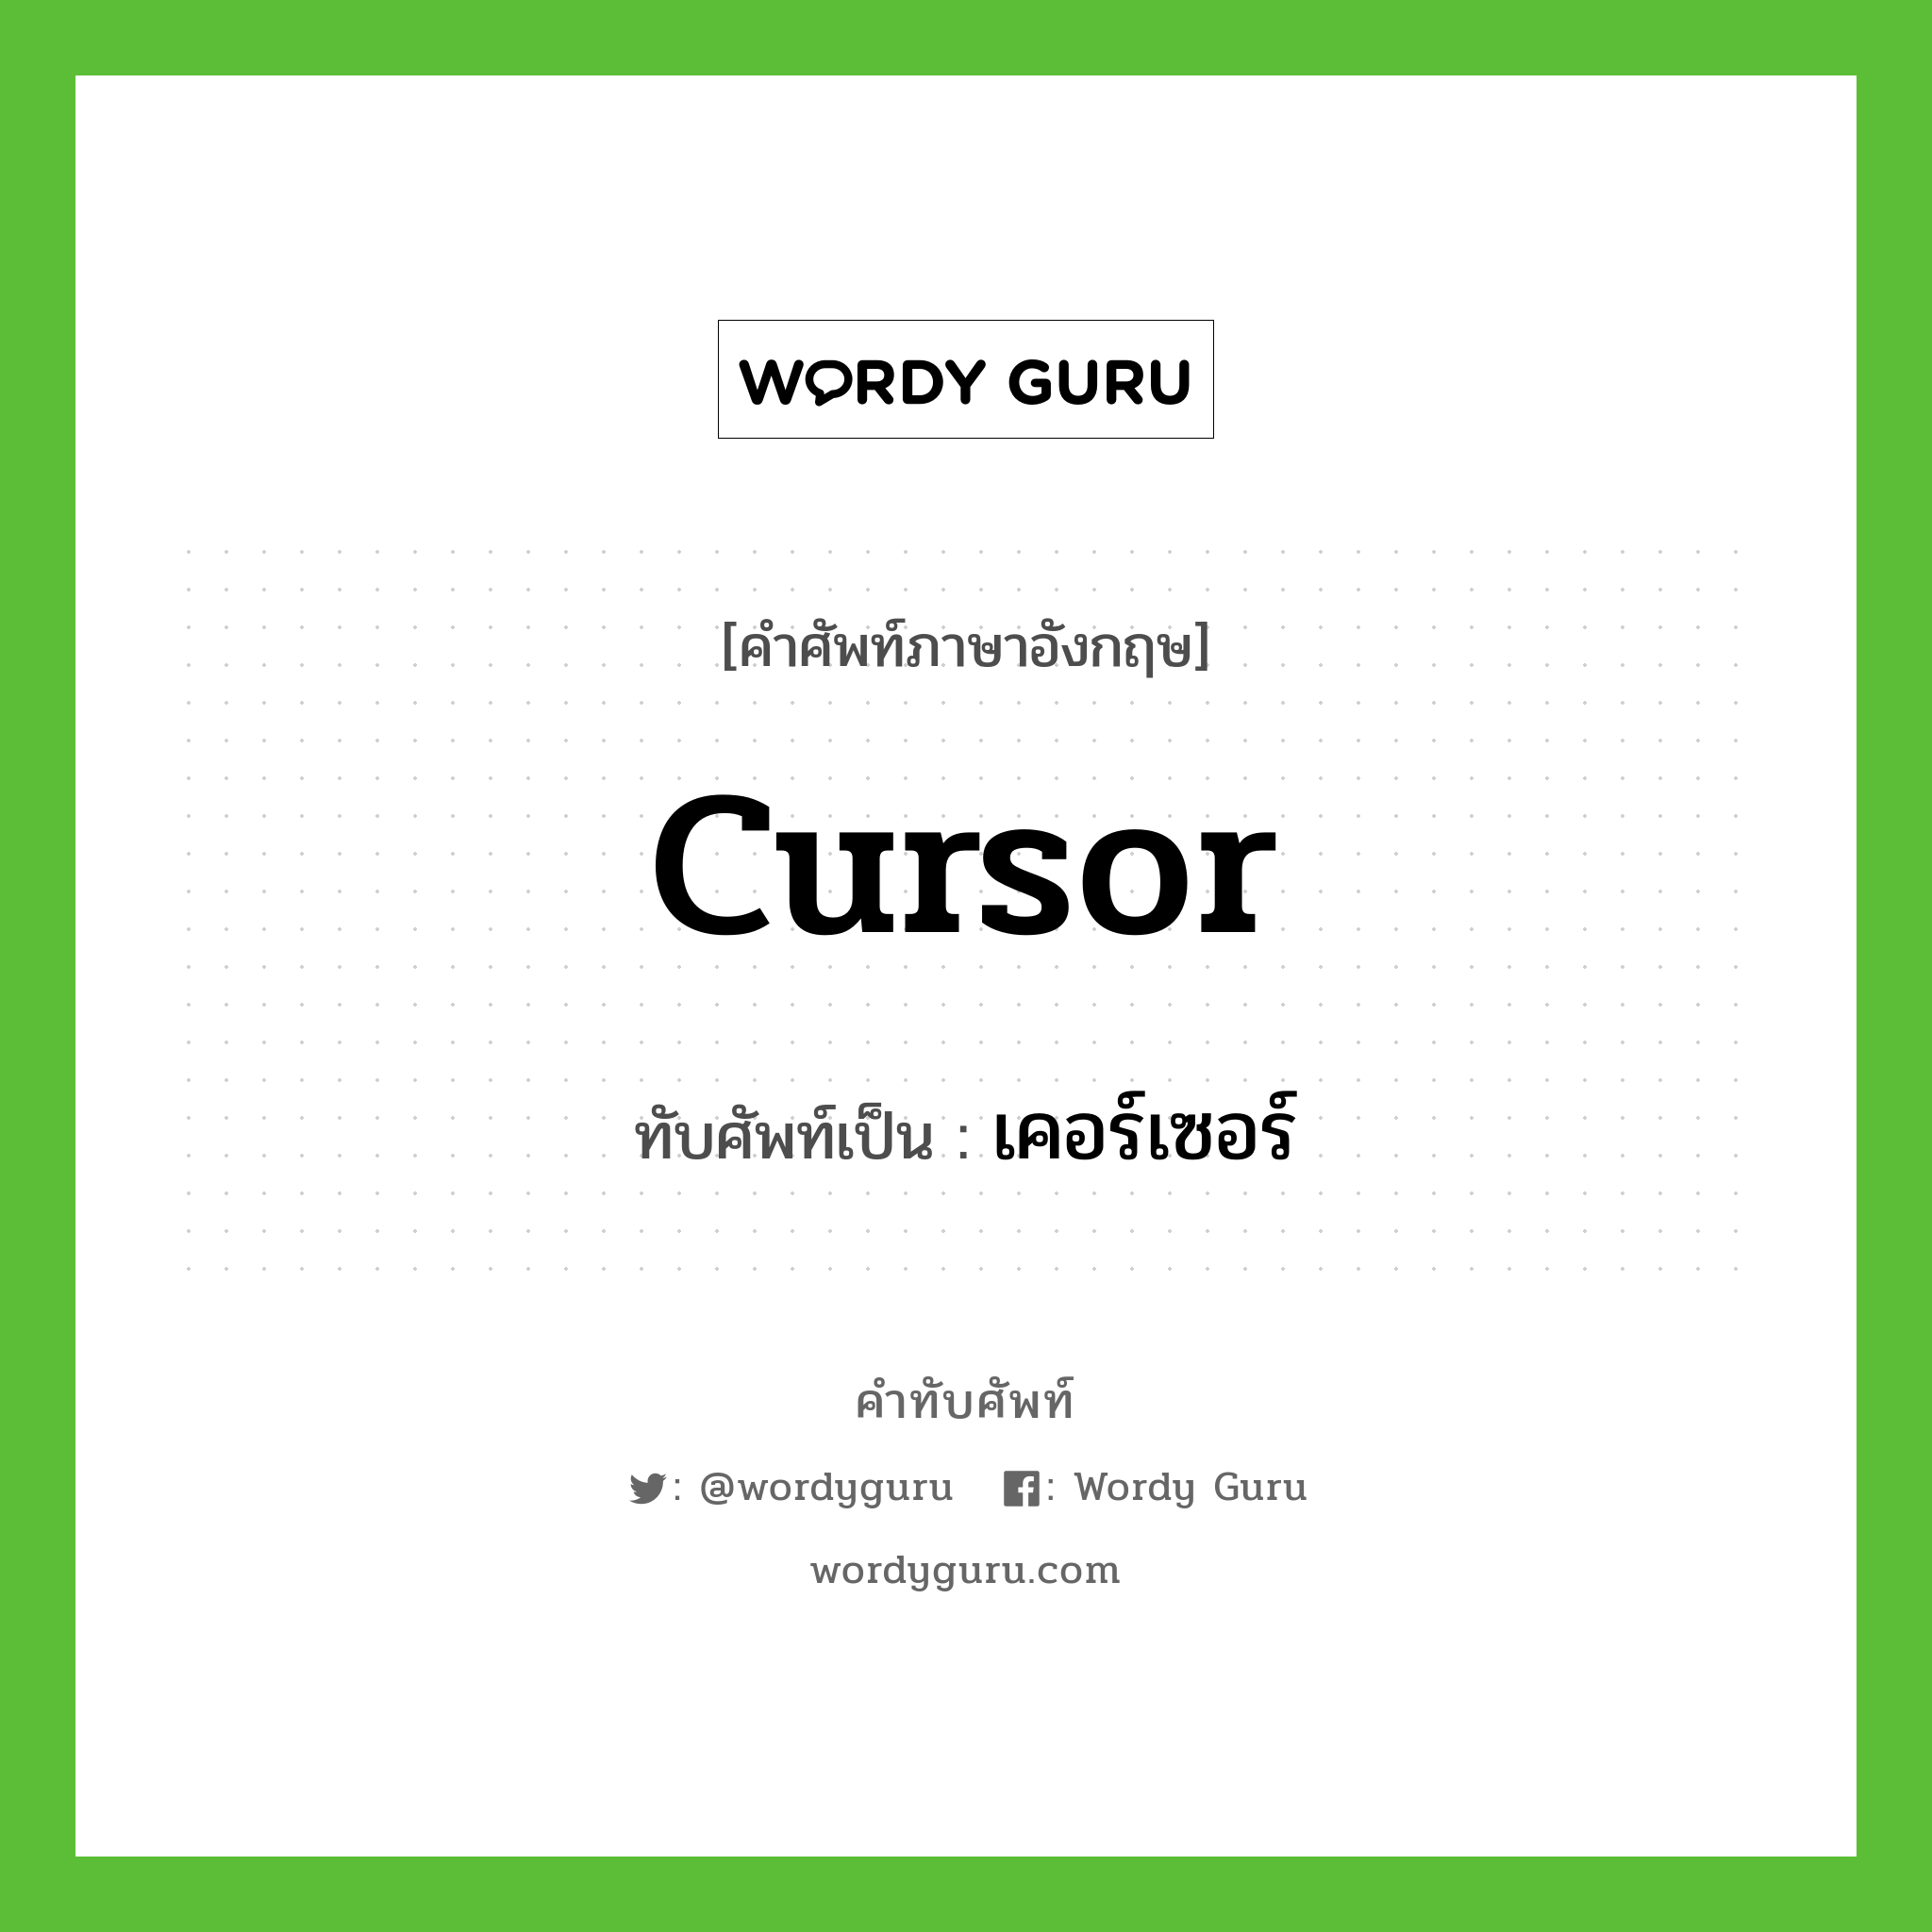 cursor เขียนเป็นคำไทยว่าอะไร?, คำศัพท์ภาษาอังกฤษ cursor ทับศัพท์เป็น เคอร์เซอร์